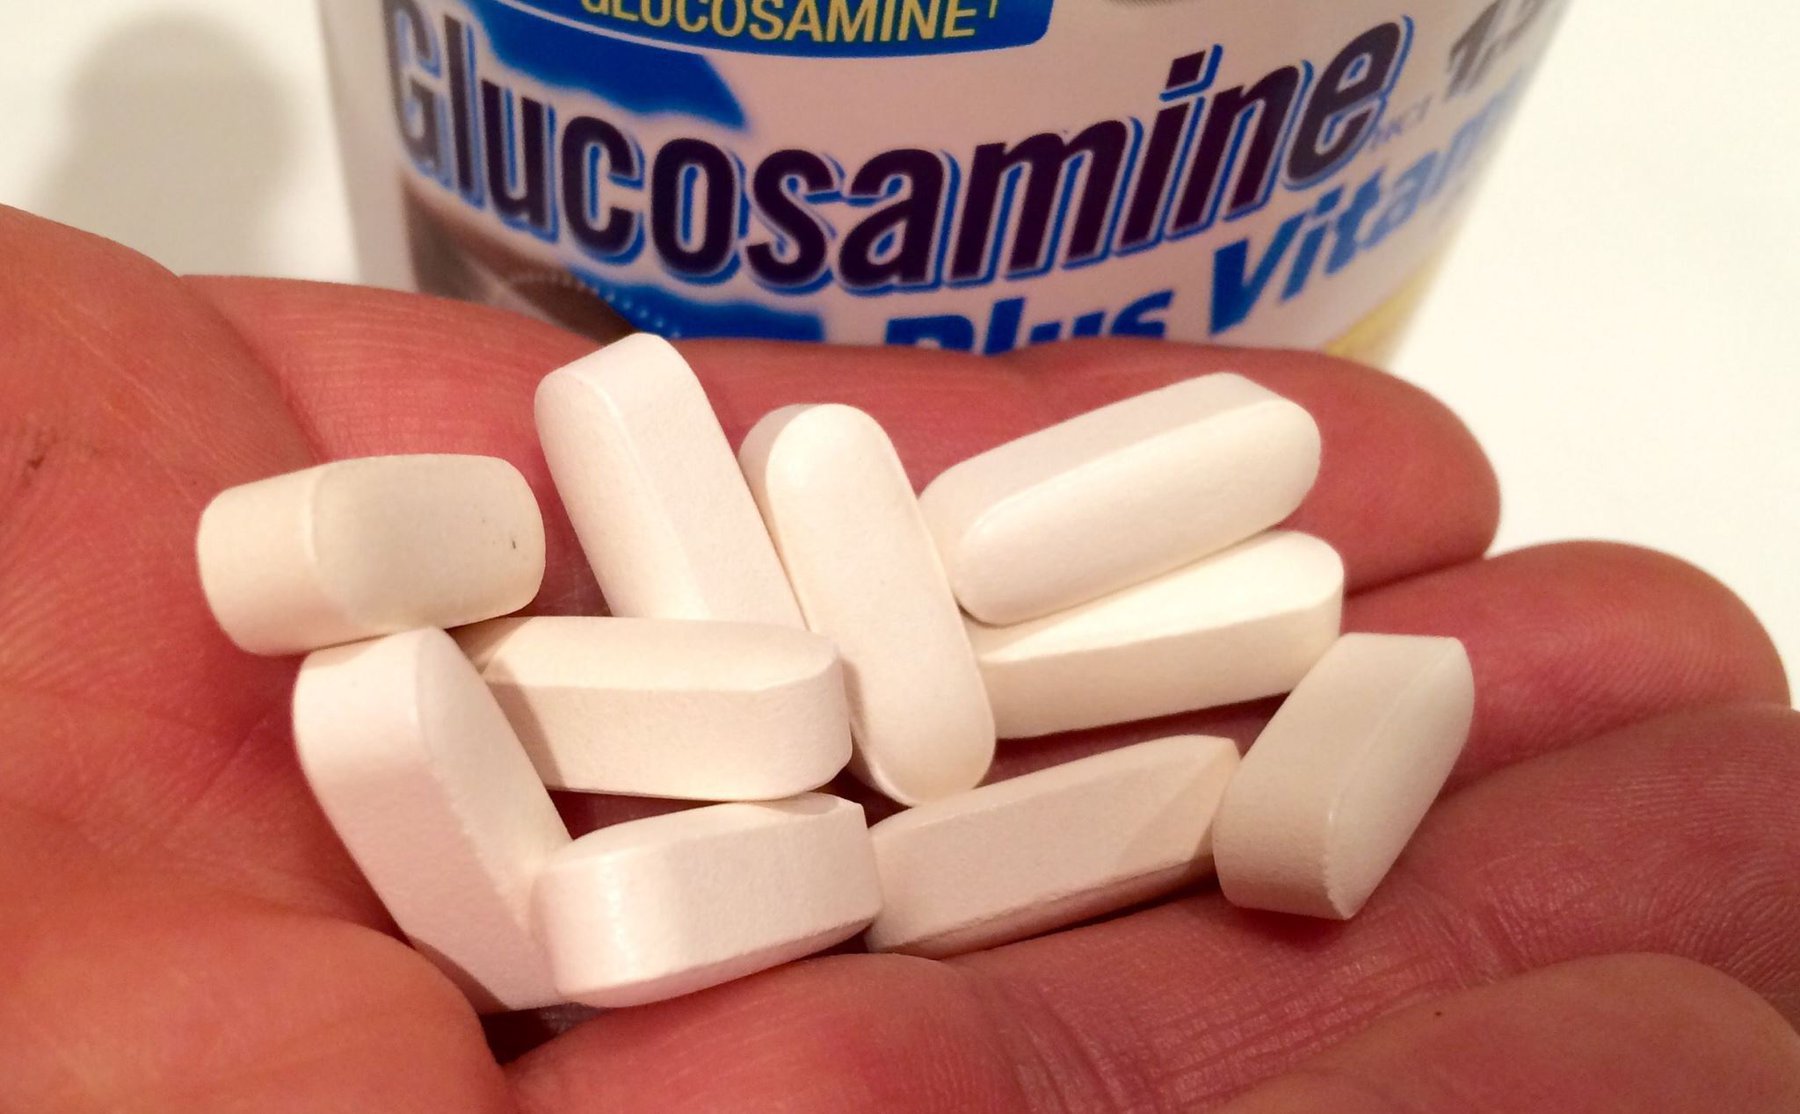 Glucosamine: Lợi ích, sử dụng và tác dụng phụ |  Vinmec